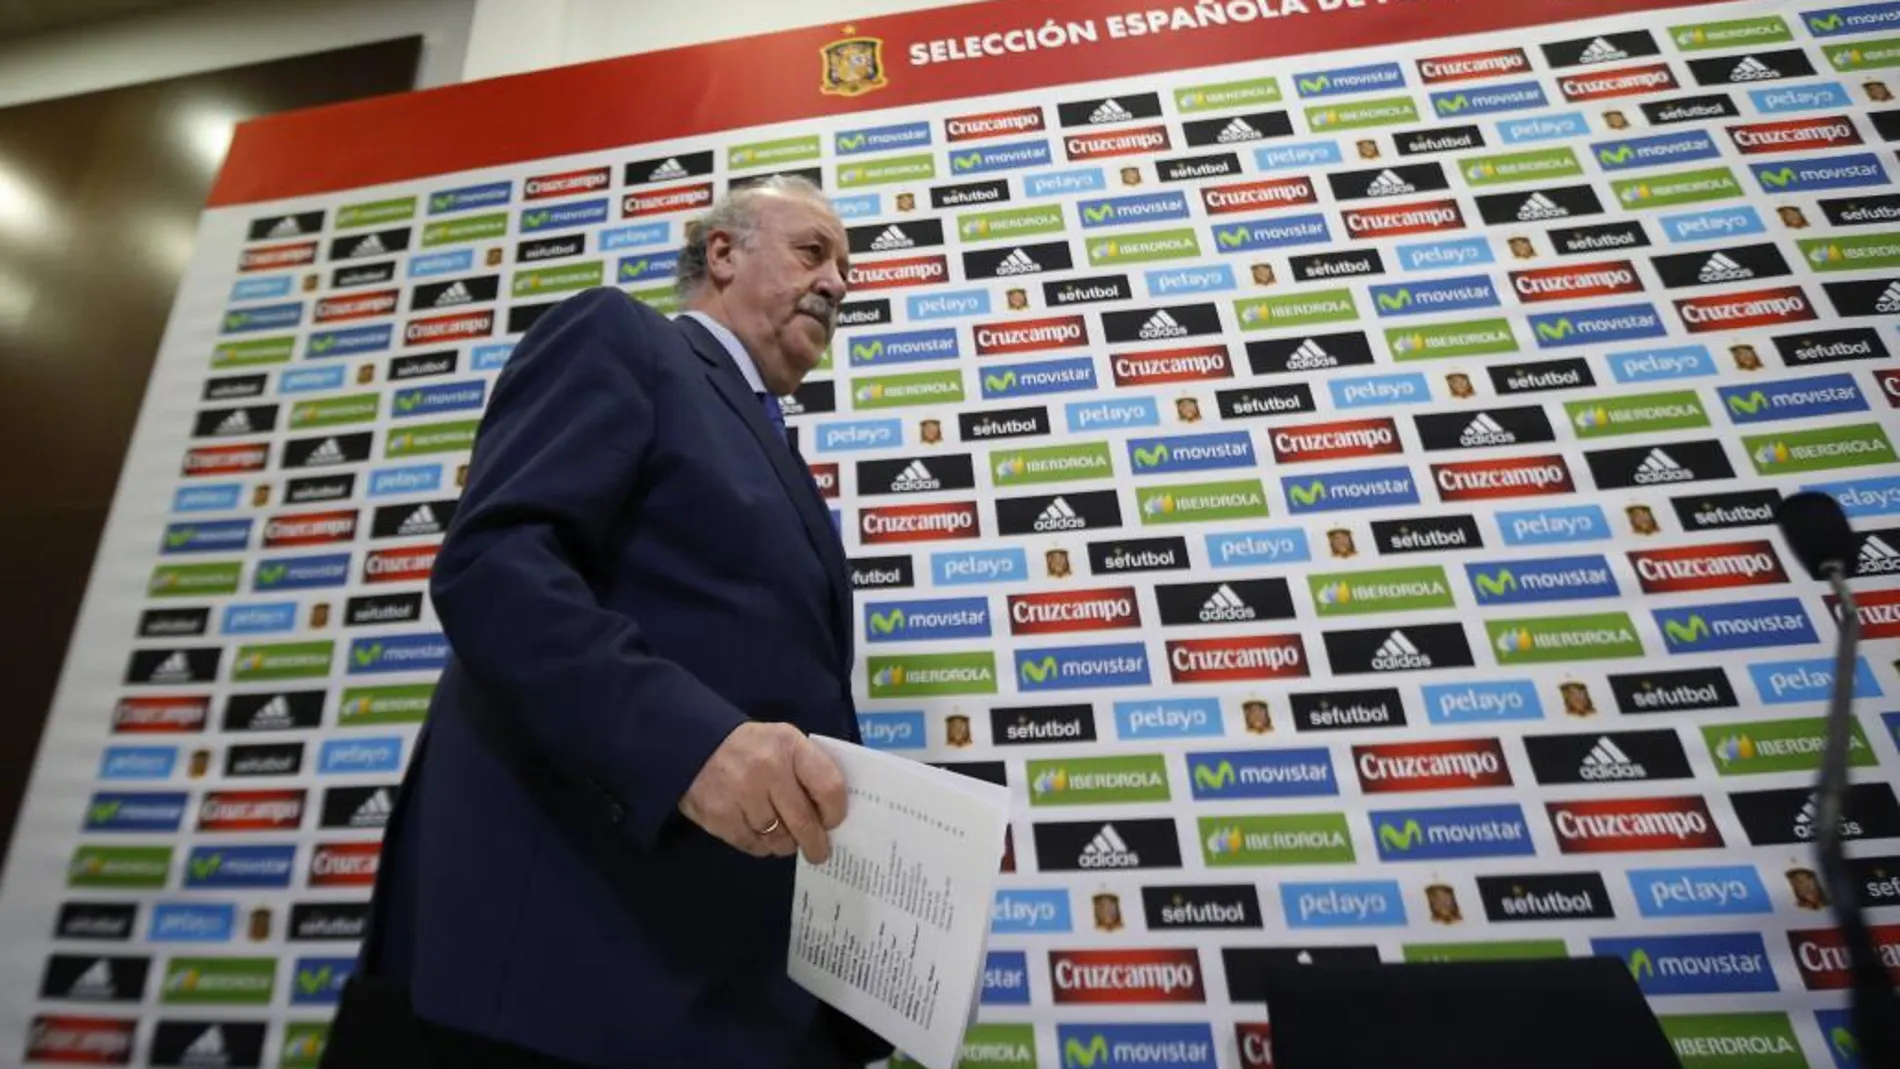 El seleccionador nacional, Vicente del Bosque, momentos antes de la rueda de prensa.